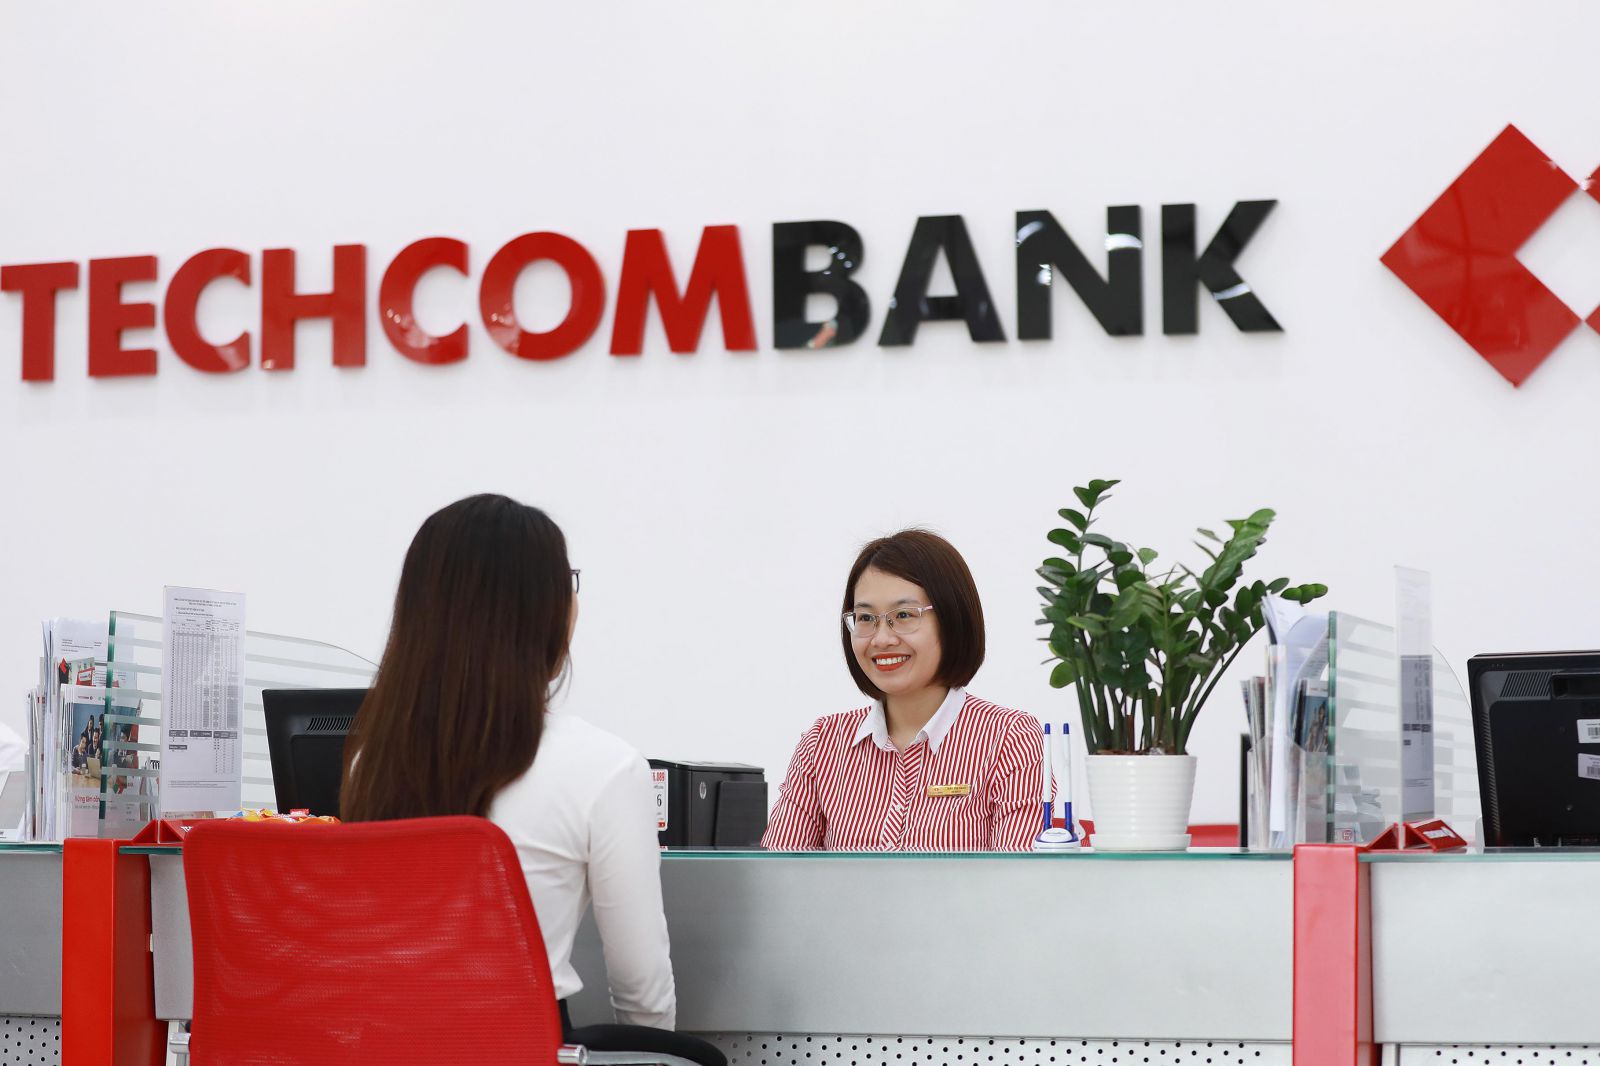 Techcombank là ngân hàng được cấp room tín dụng cao nhất lên 17% trong 6 tháng cuối năm